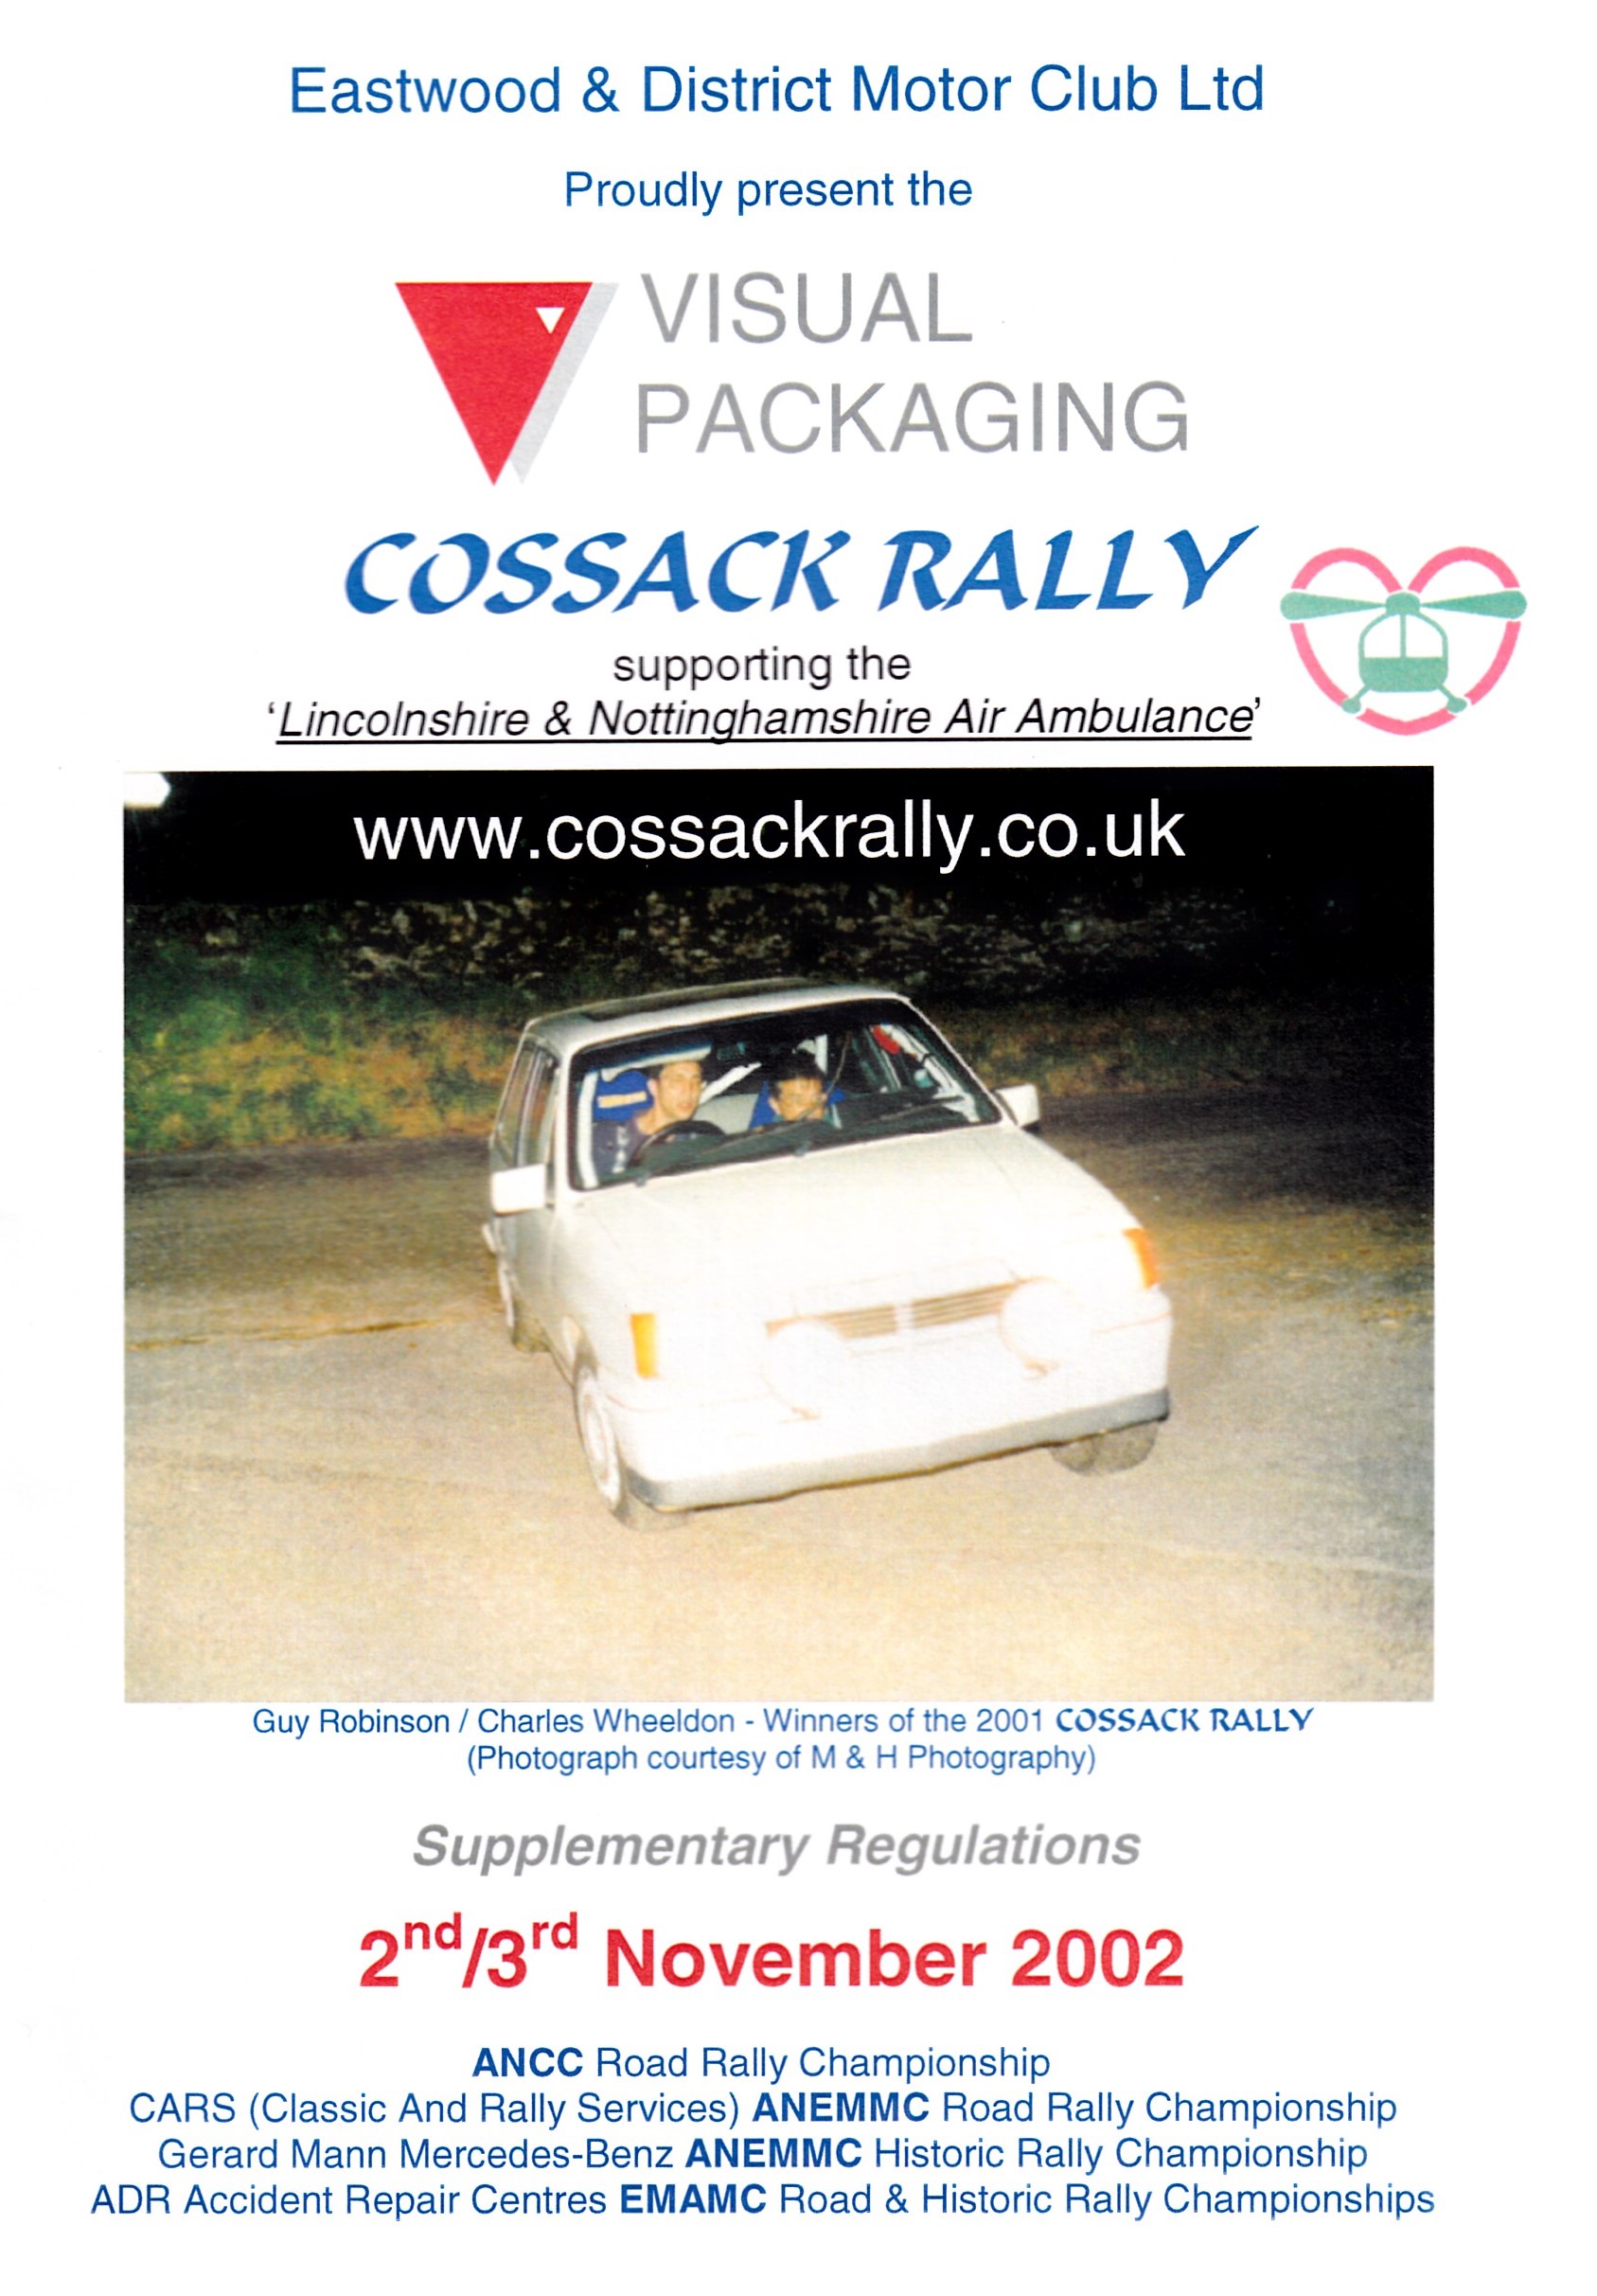 Cossack Rally 2002